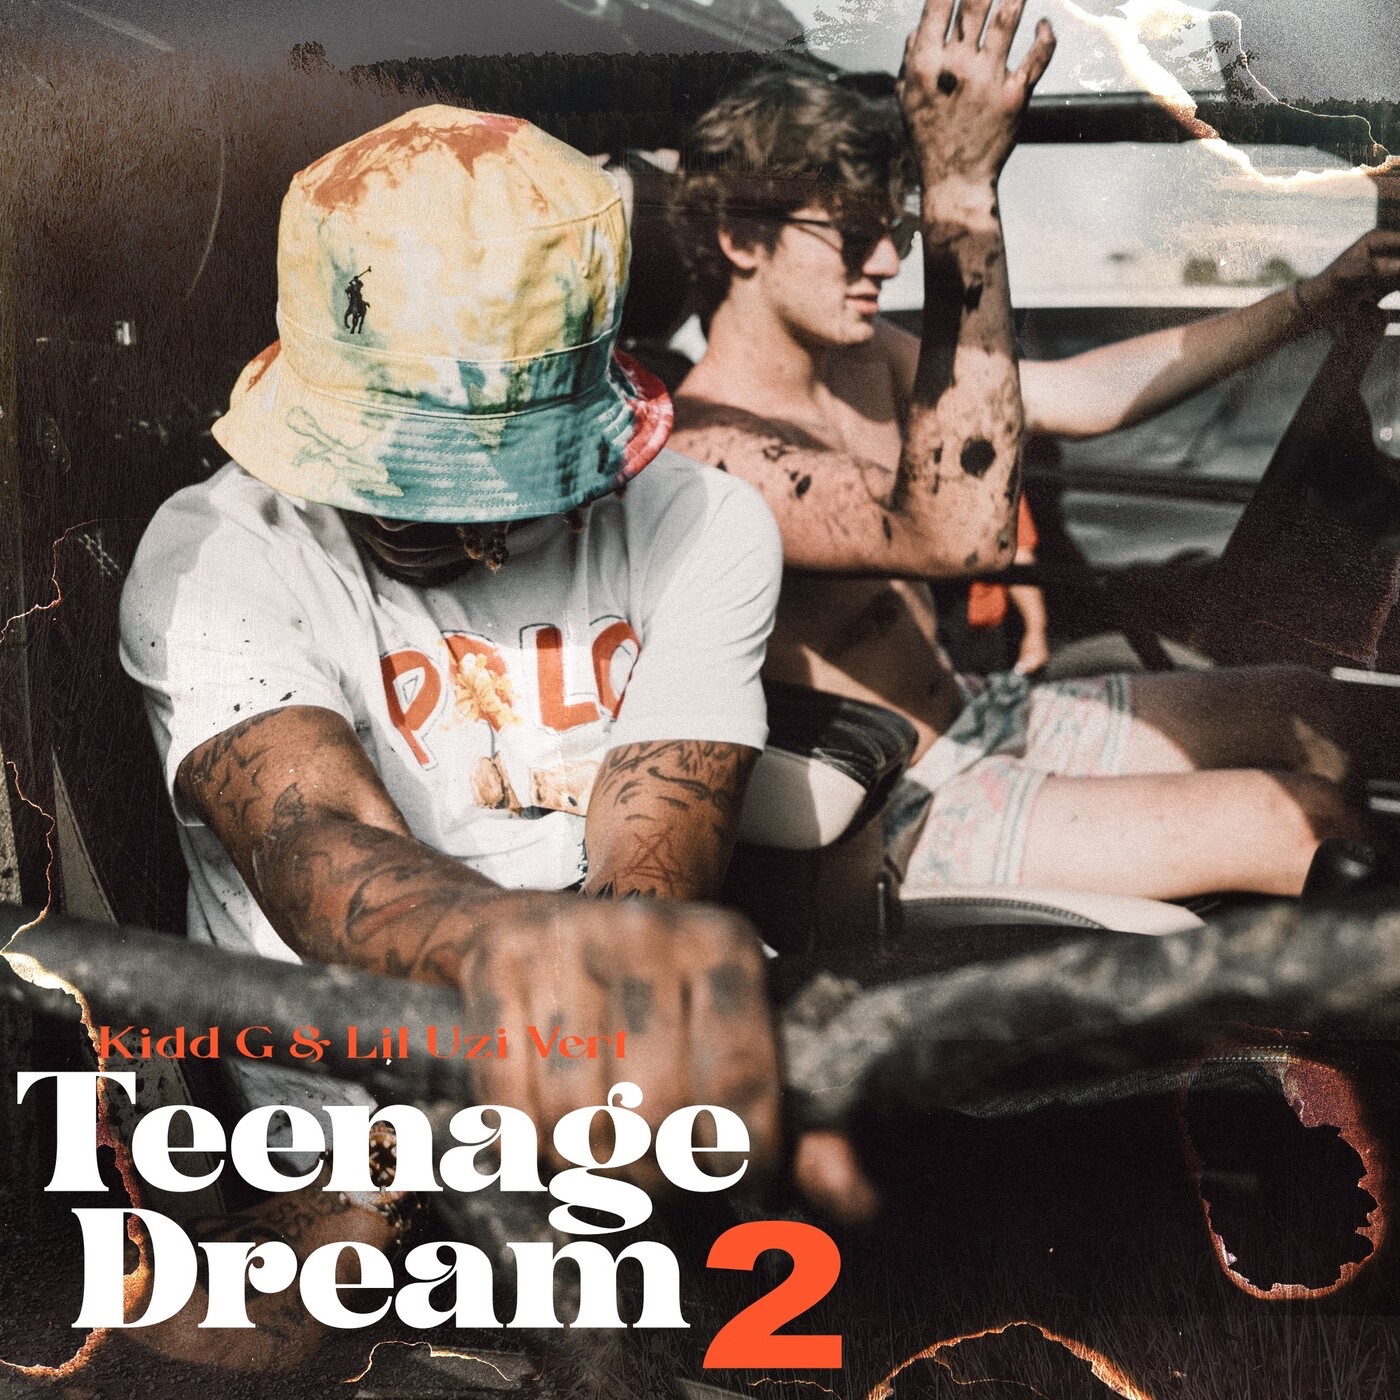 Kidd G & Lil Uzi Vert - Teenage Dream 2 - Single